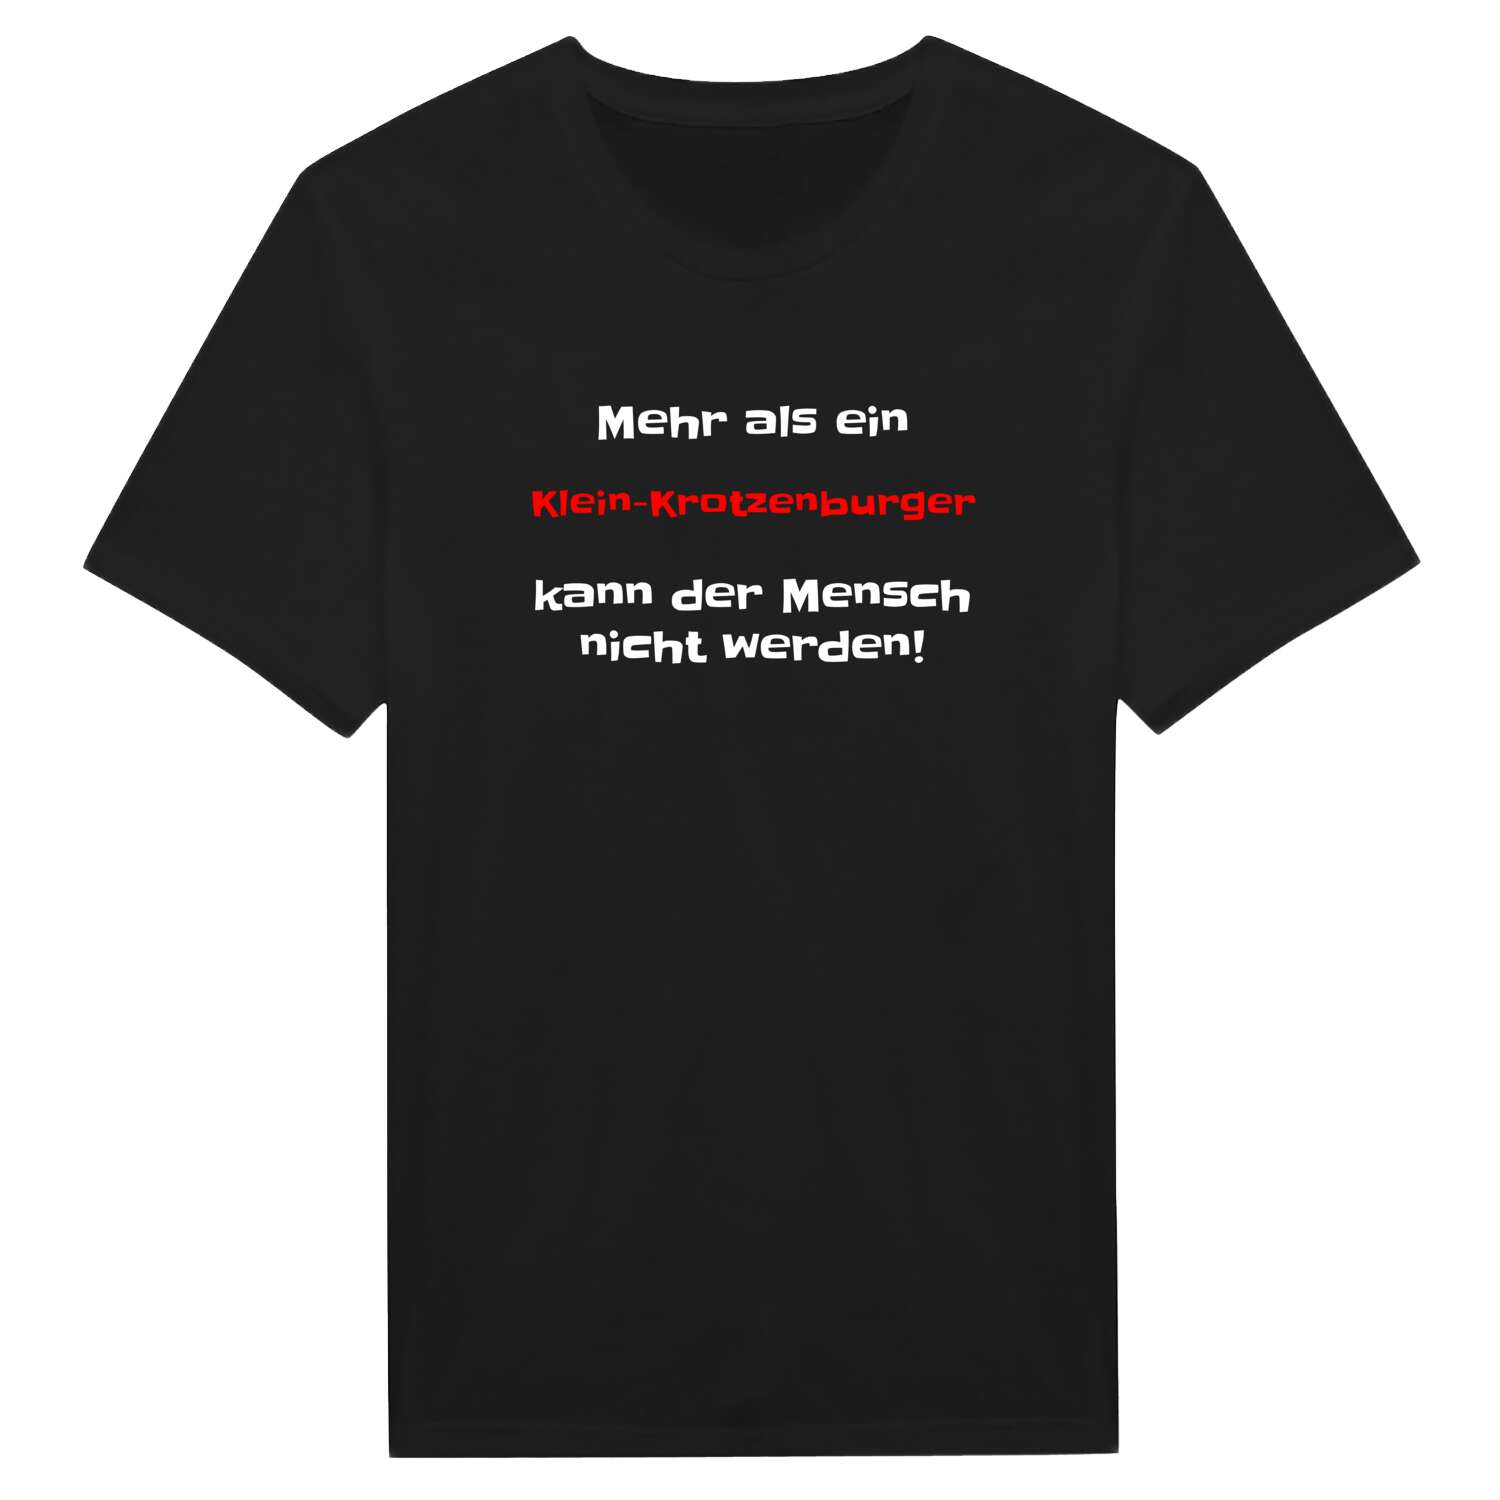 Klein-Krotzenburg T-Shirt »Mehr als ein«